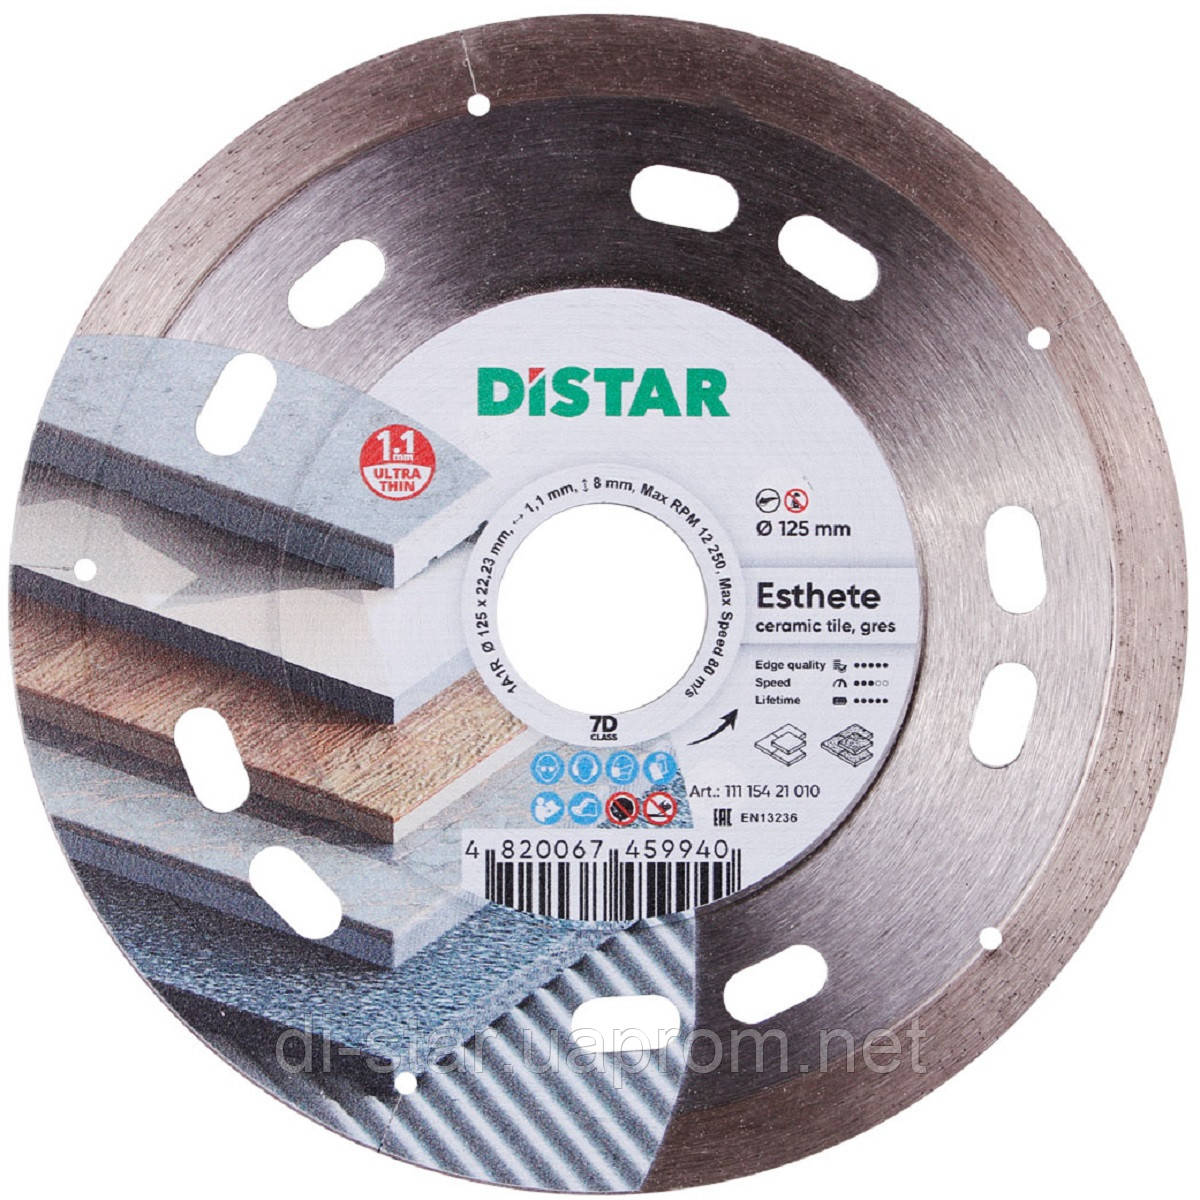 Круг алмазний 125 мм Distar Esthete 7D 1A1R ультратонкий відрізний диск для кераміки та керамограніту 11115421010